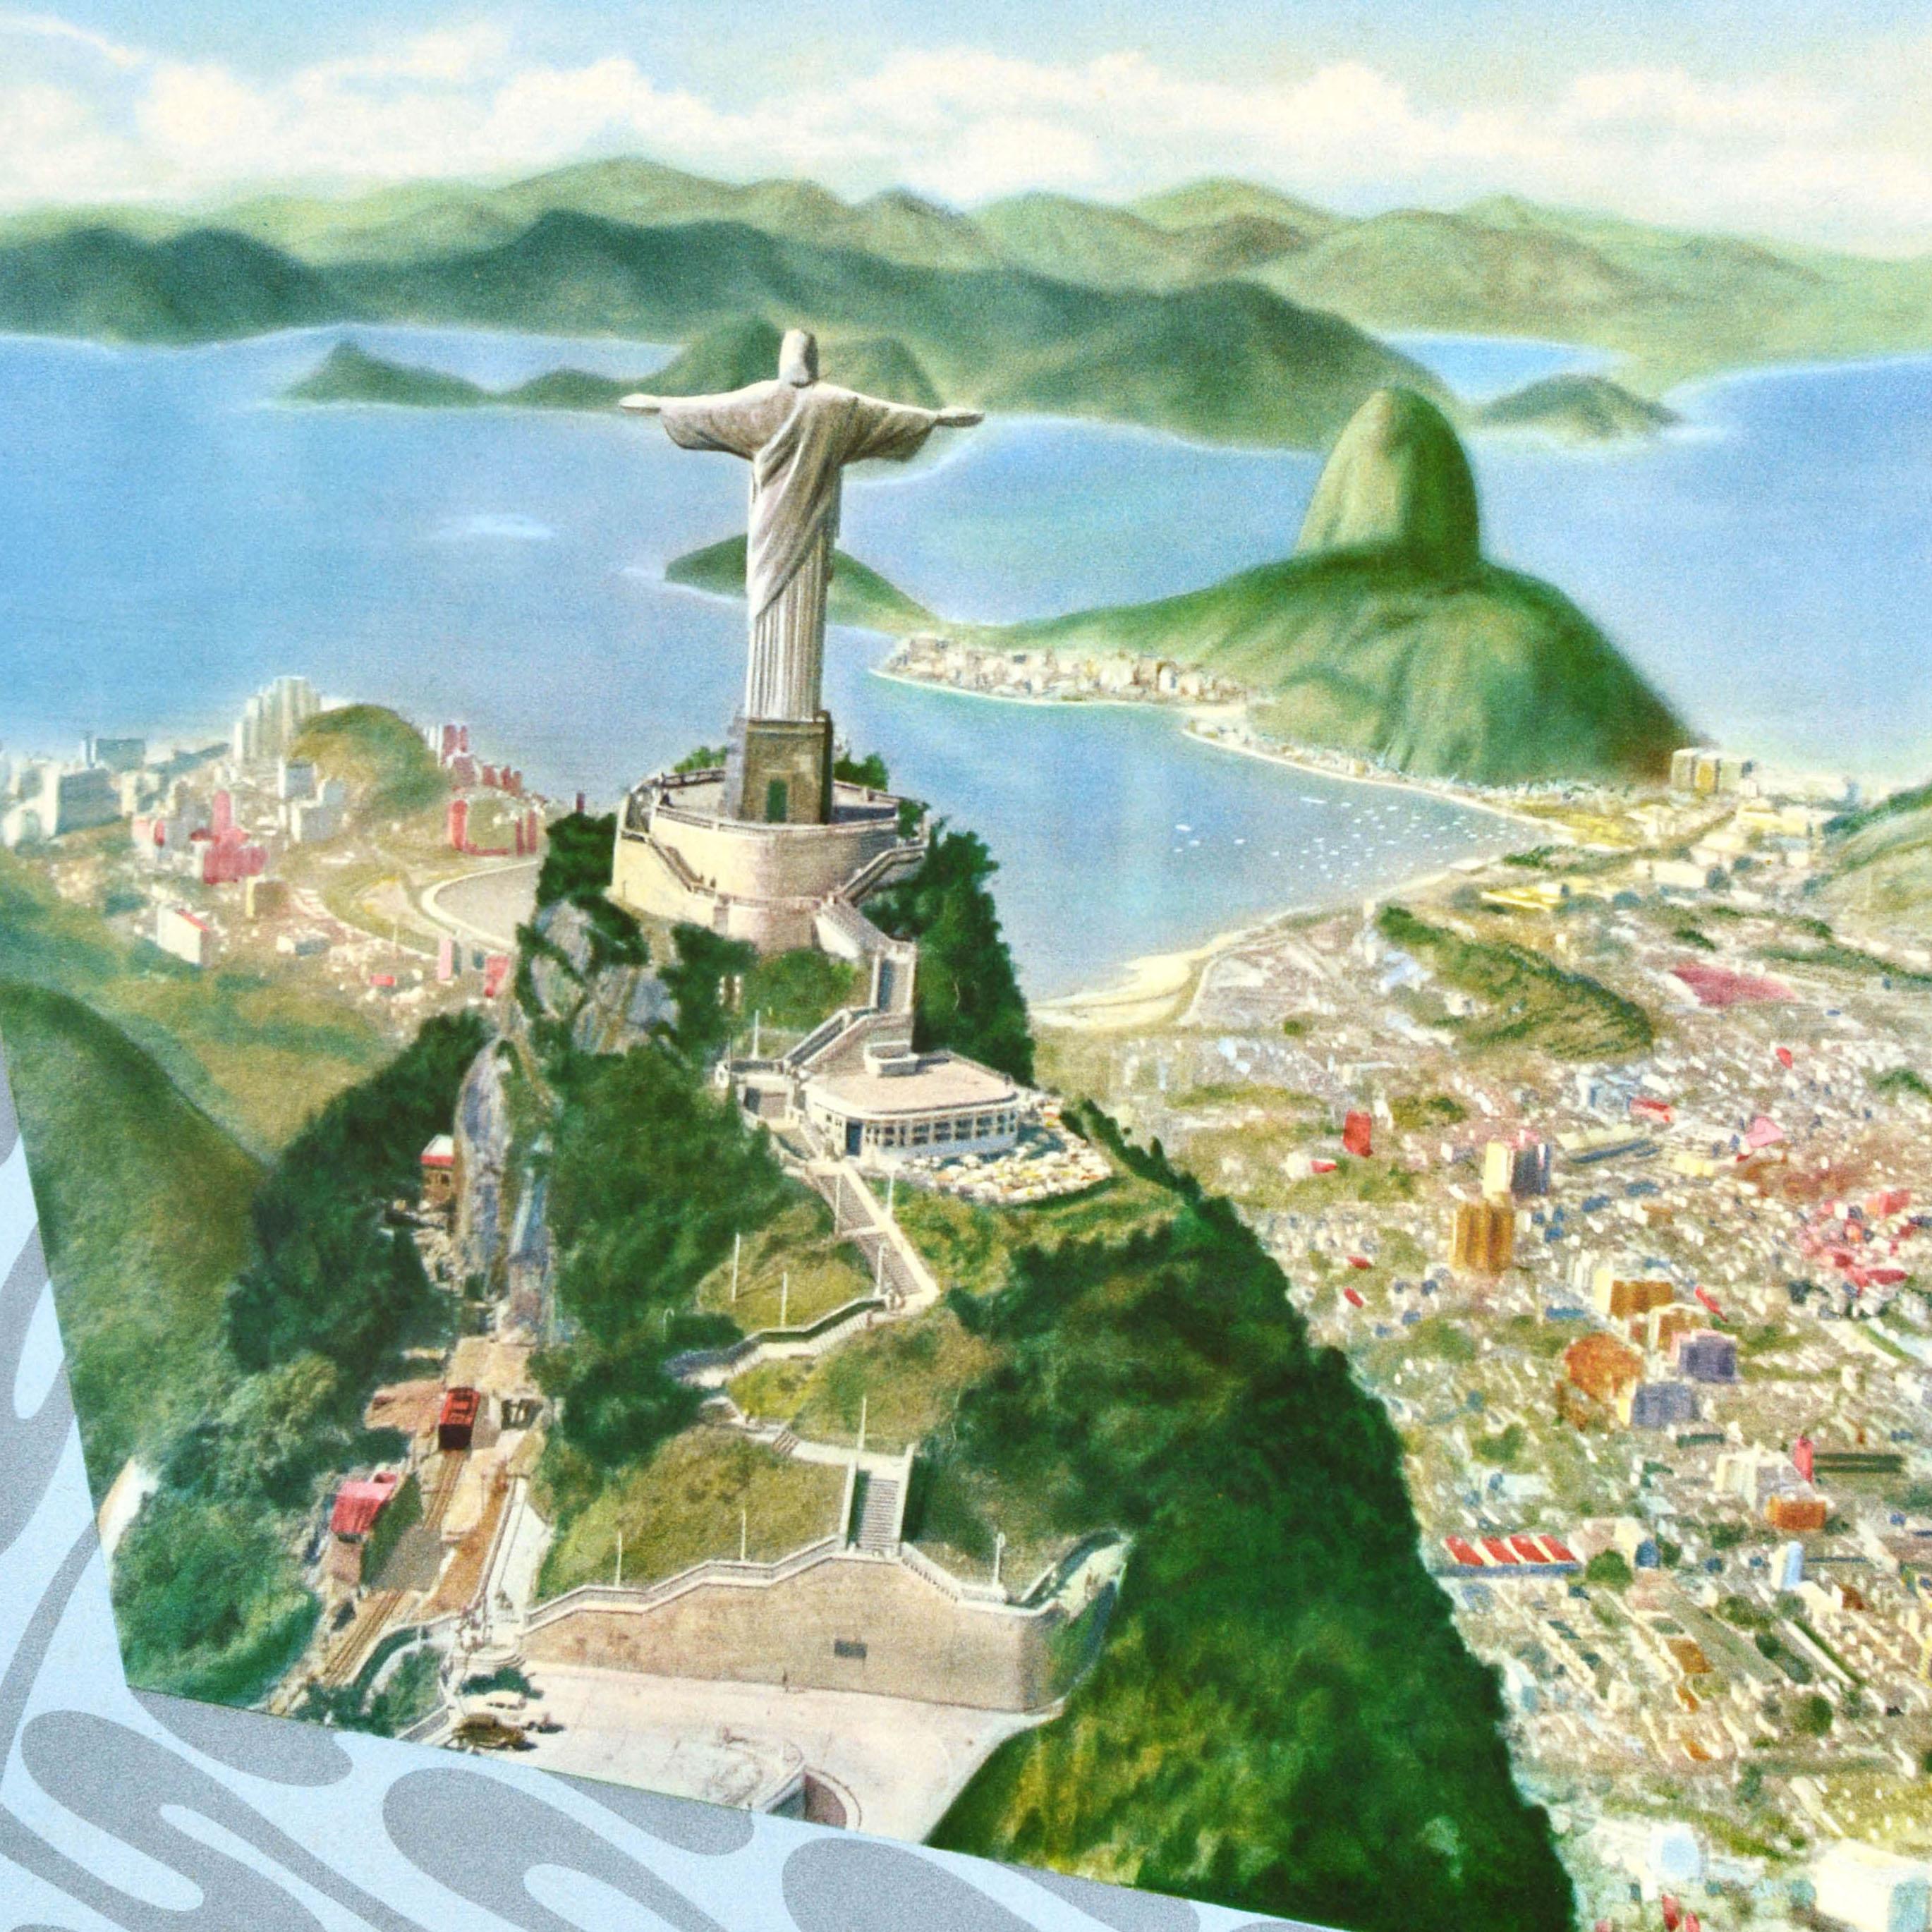 Original Vintage-Reiseplakat für Rio de Janeiro in Brasilien Südamerika mit dem Christus der Erlöser-Statue auf dem Gipfel des Mount Corcovado mit Blick auf die Stadt unten mit Zuckerhut und das Meer zu nebelverhangenen Hügeln am Horizont, der